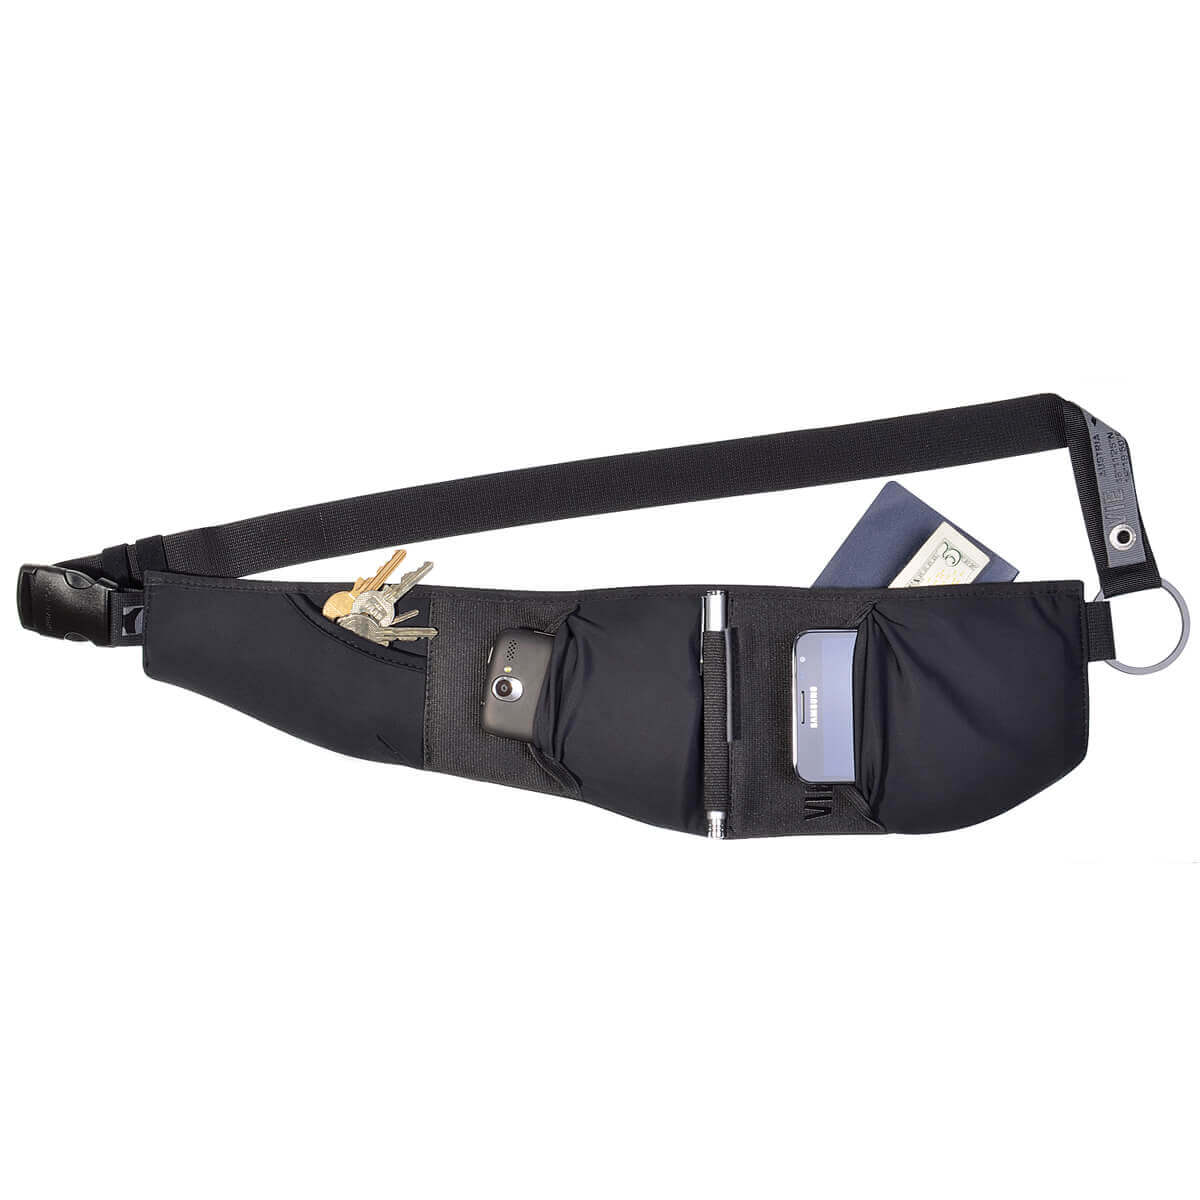 belt bag for phone, keys, money, running gear URBAN TOOL ® caseBelt